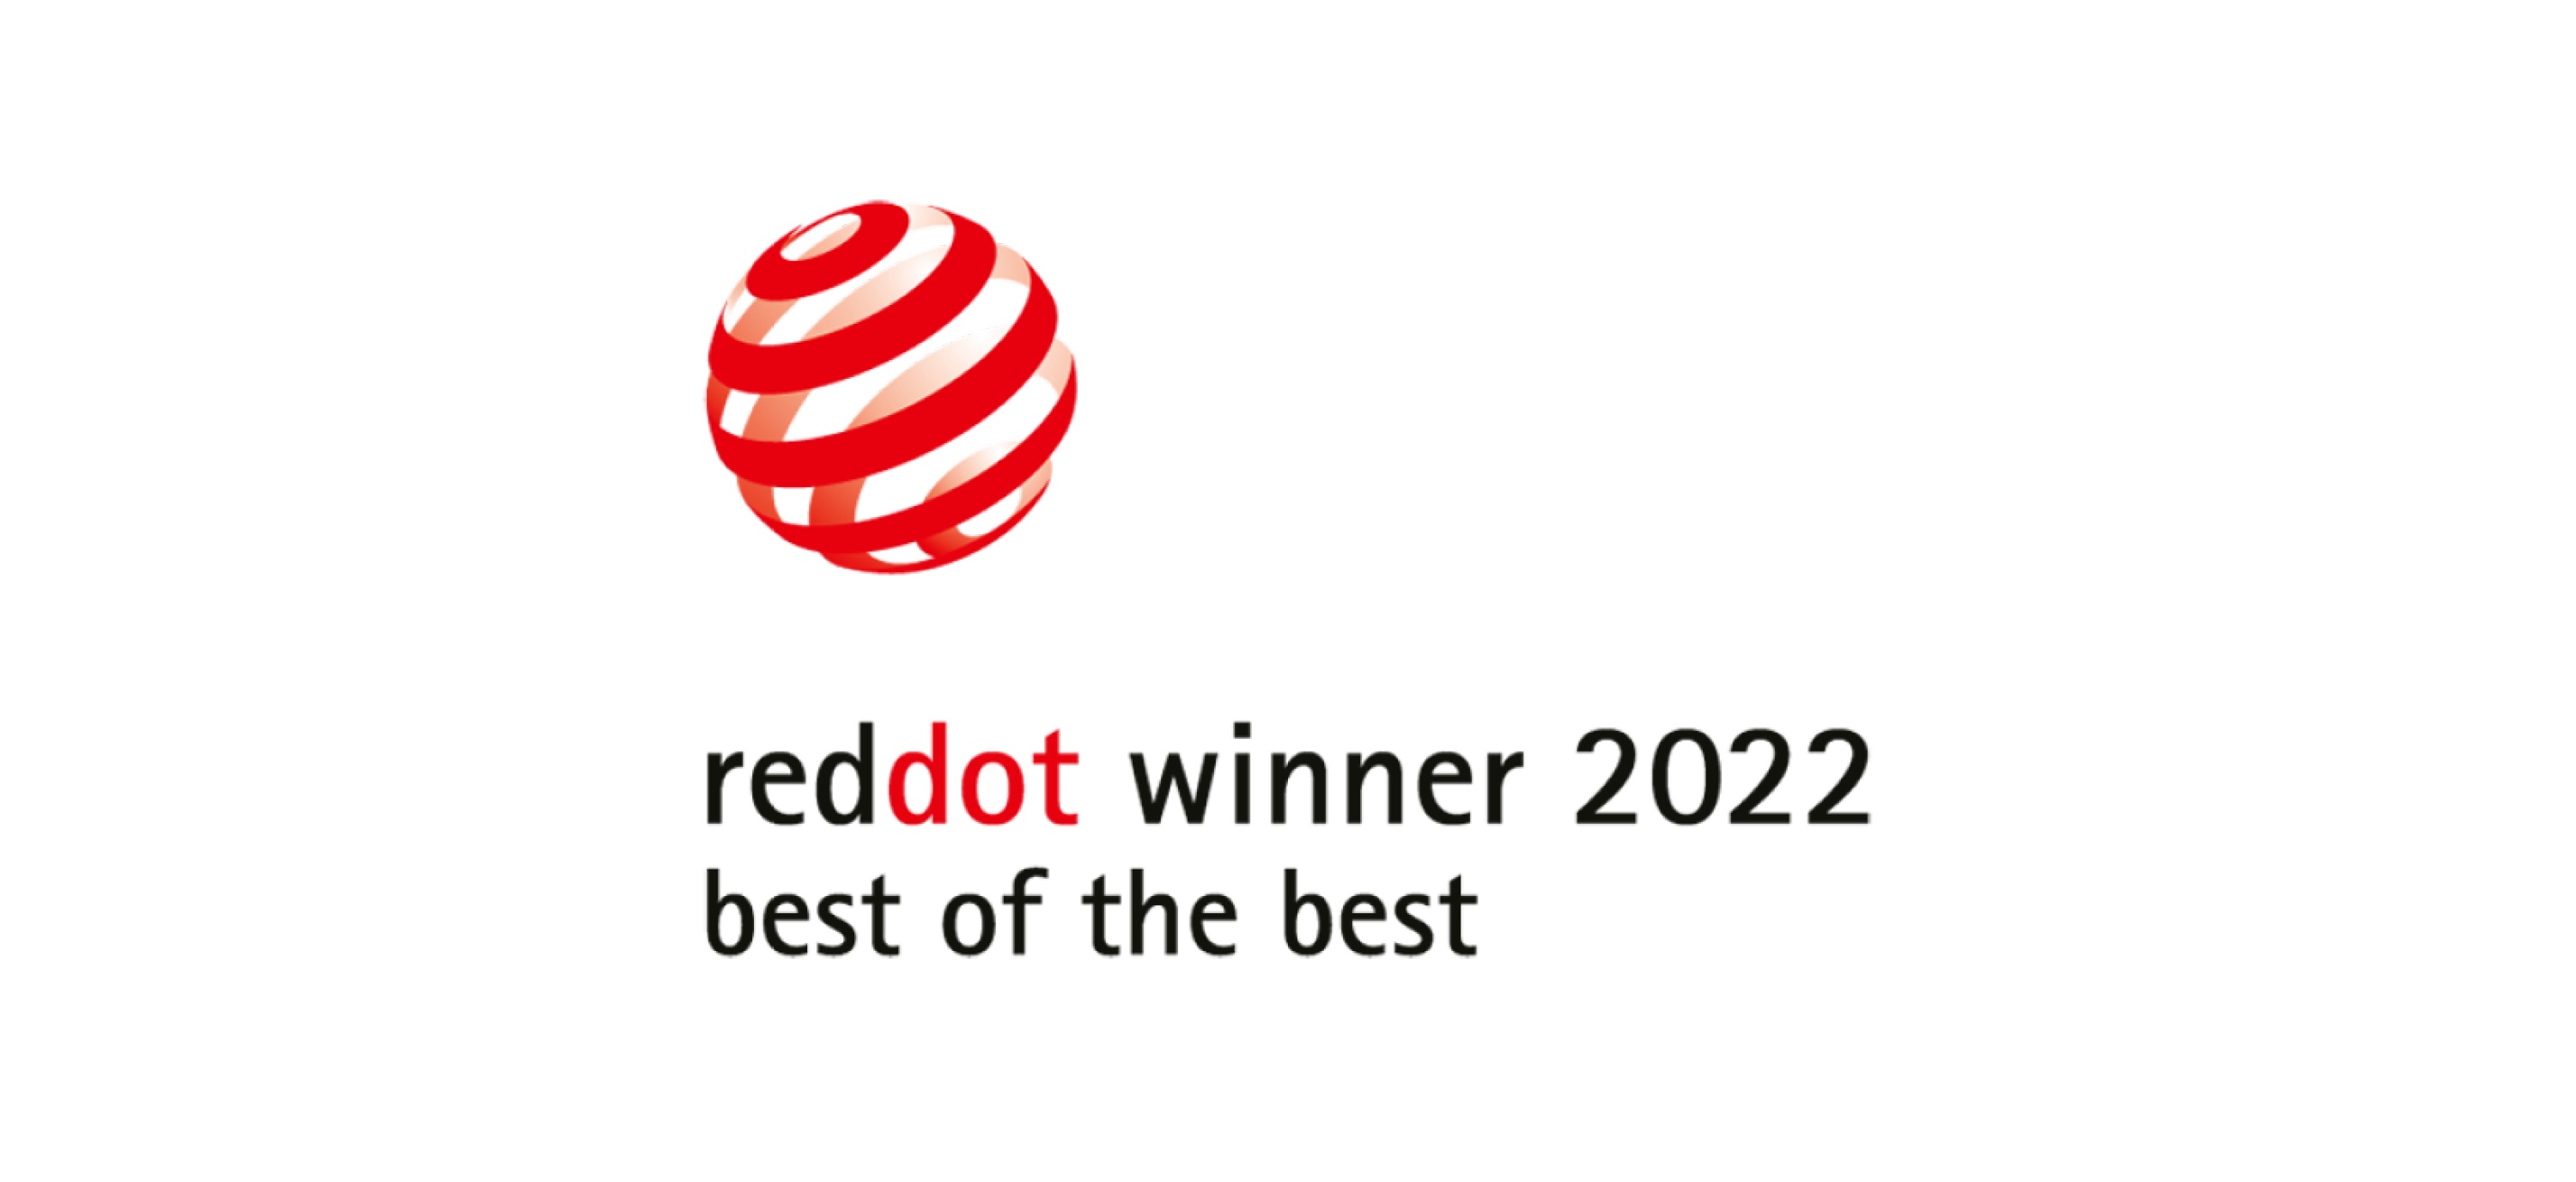 reddot winner 2022 best of the best